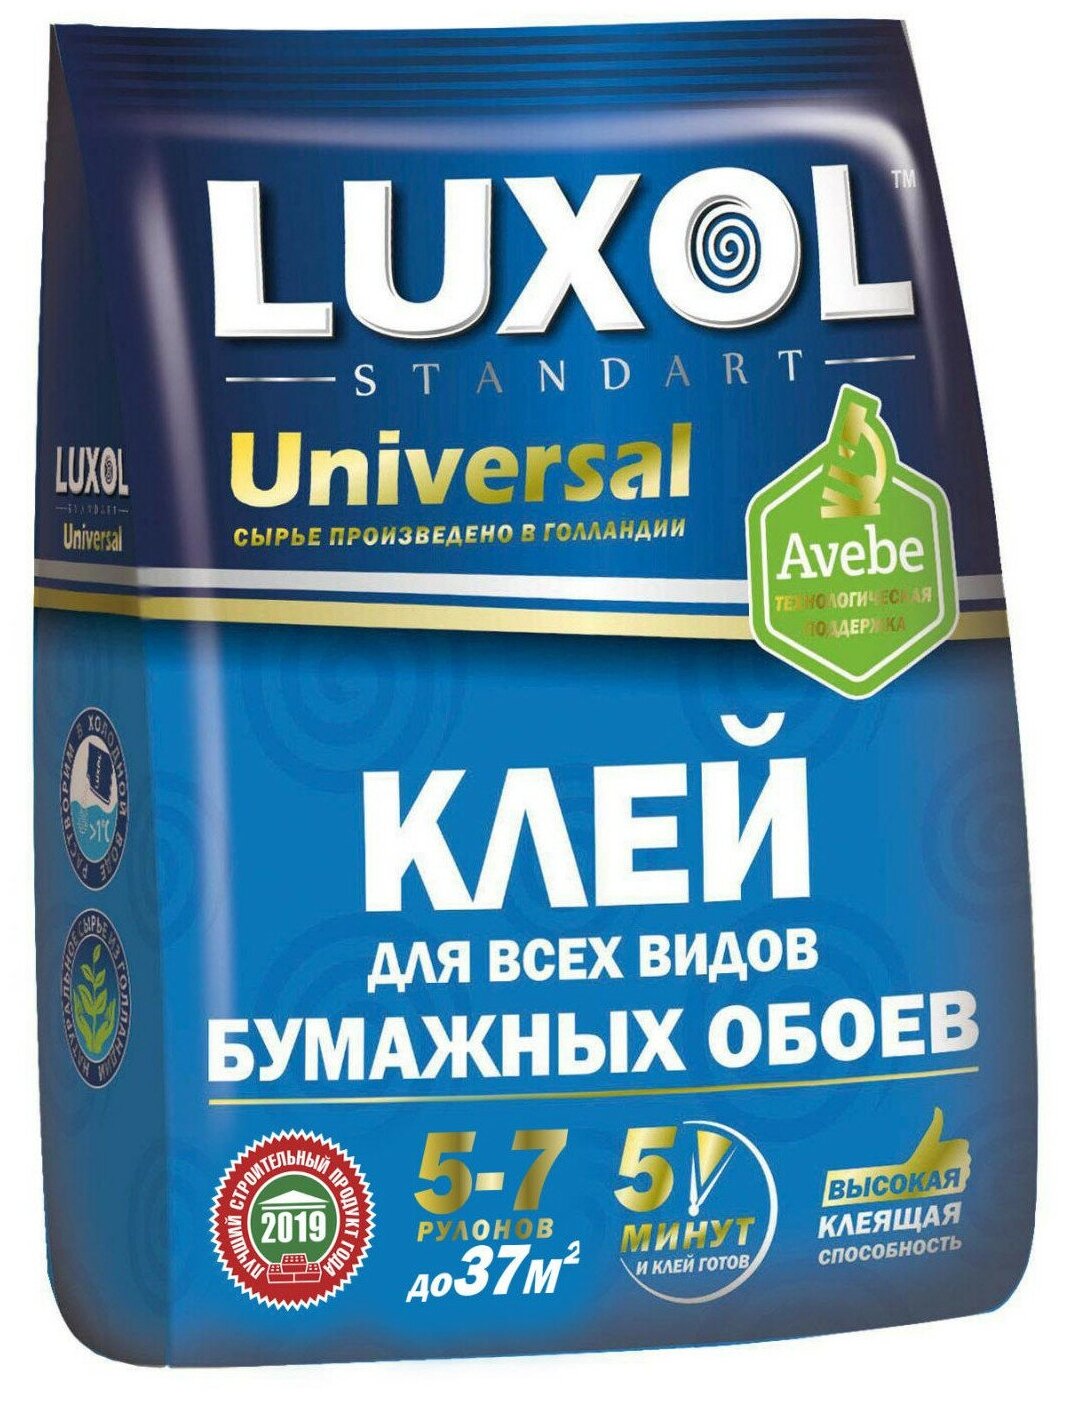 Клей обойный «LUXOL универсал» (Standart) пакет 180г.